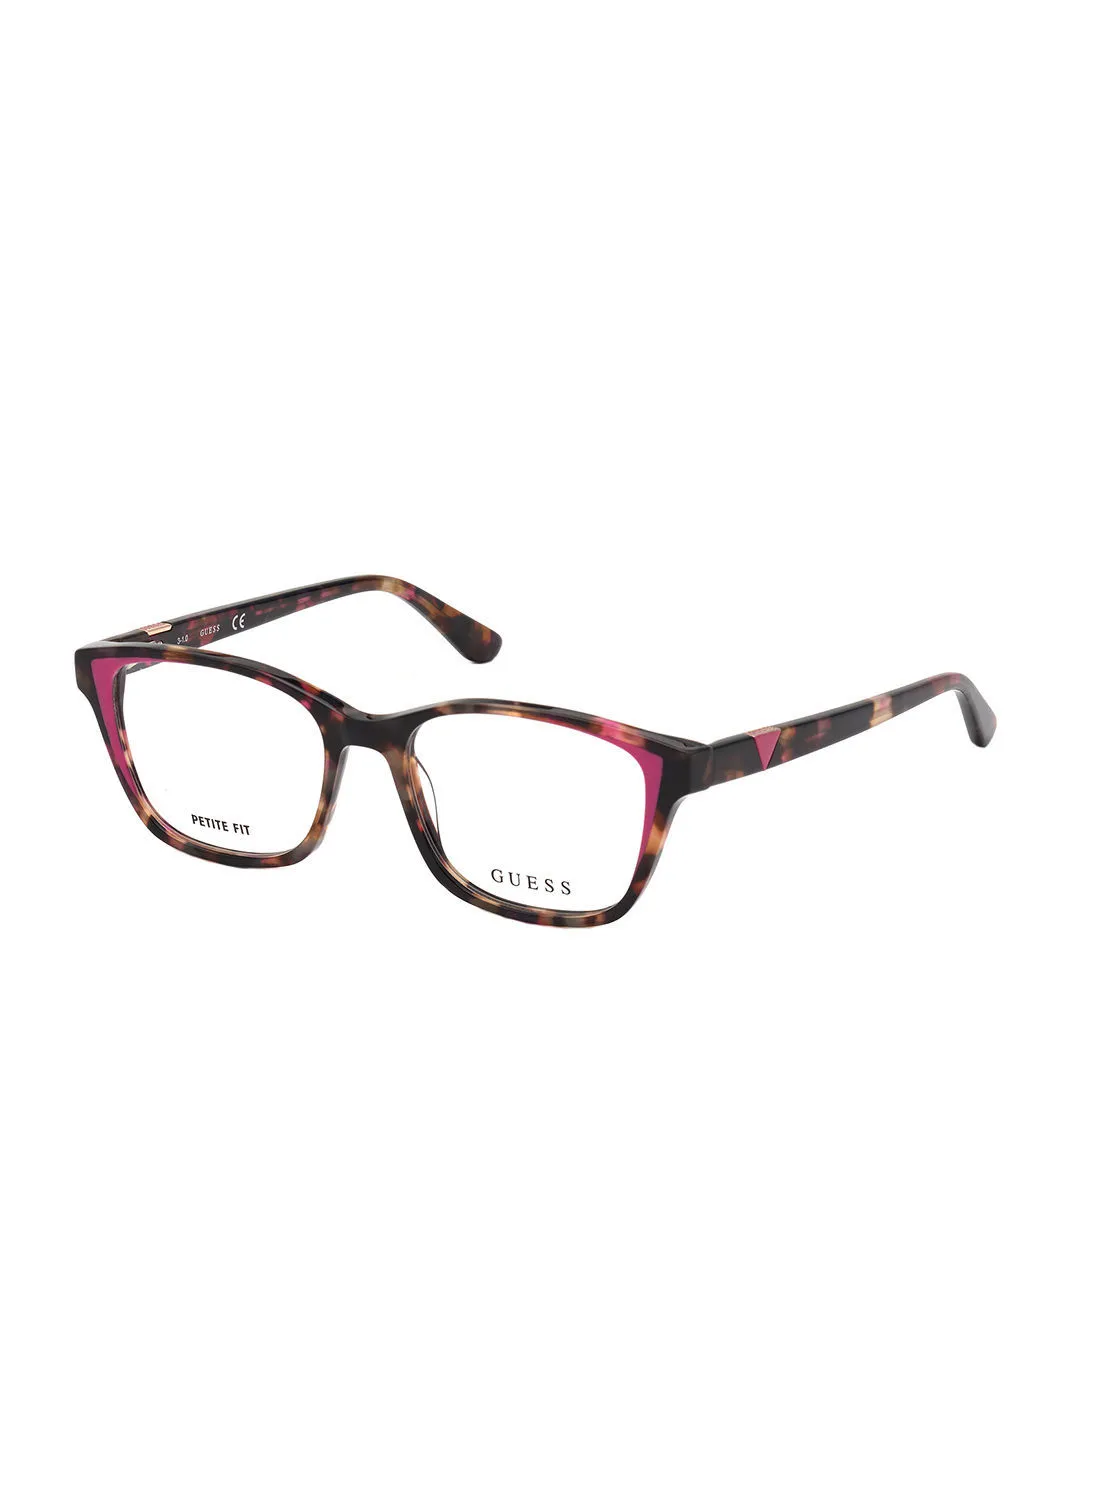 GUESS Square Eyewear Optical Frame GU281007456